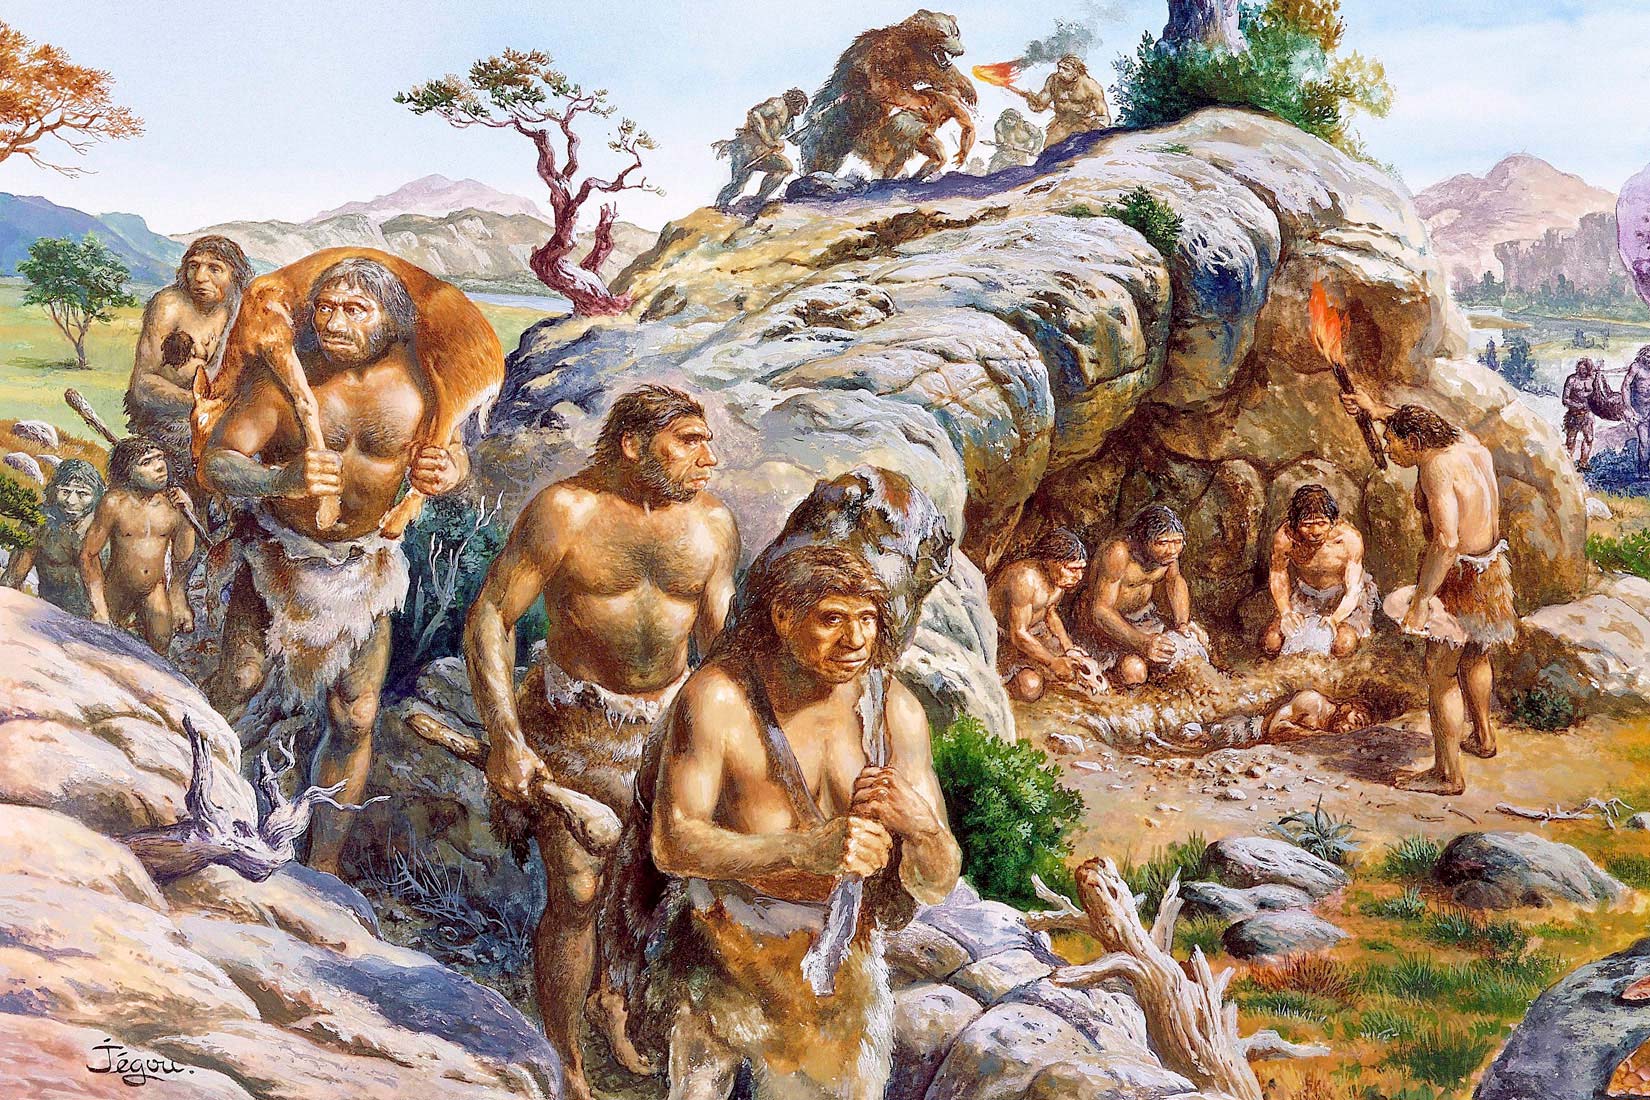 Na slici je skupina Neandertalaca. Dio se vraća iz lova s plijenom, a dio je prikazan ispod velikog kamena koji djeluje kao špilja.